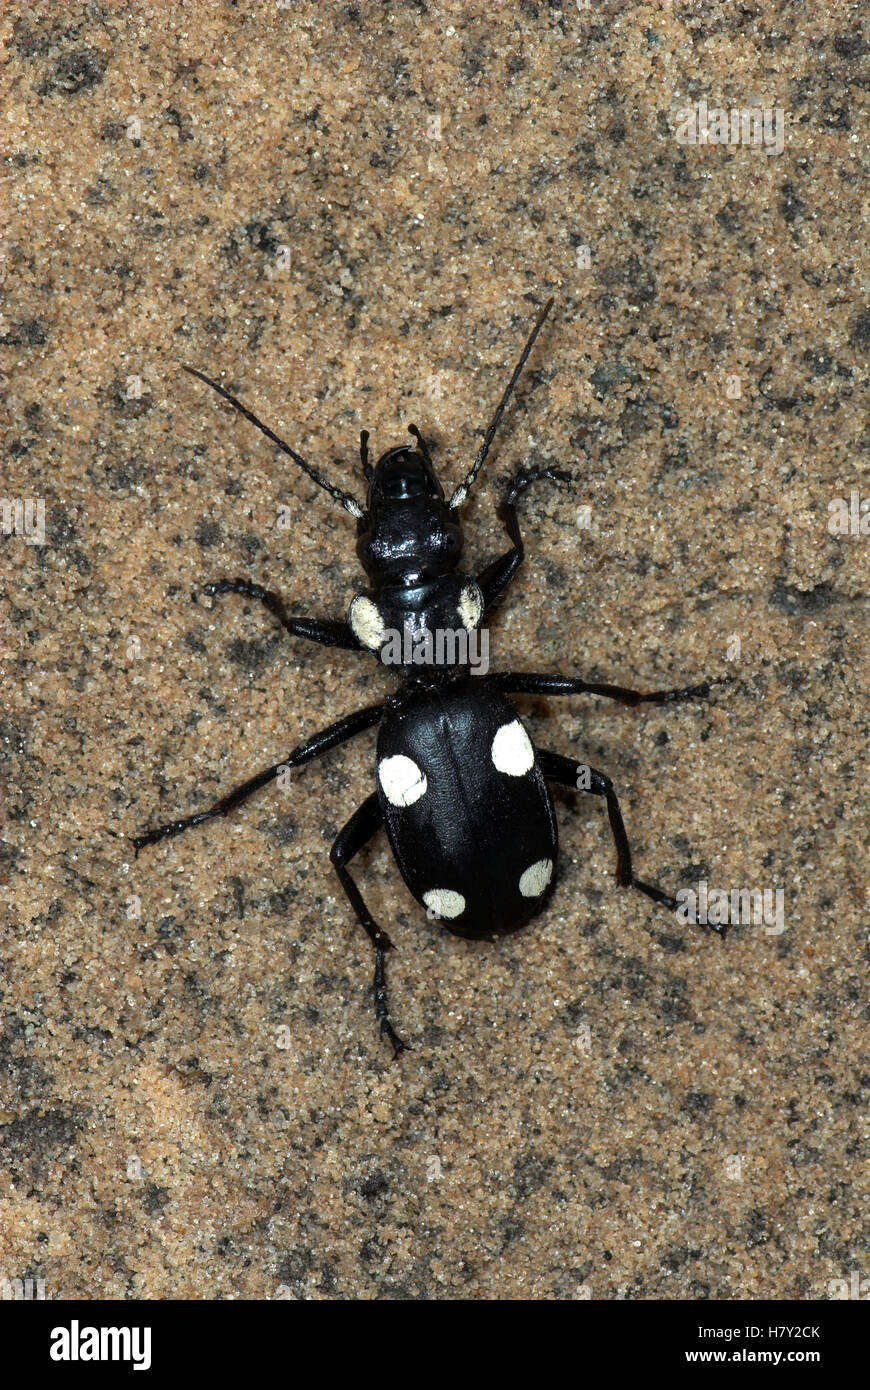 Domino Beetle Anthia sexguttata black with white spots Stock Photo